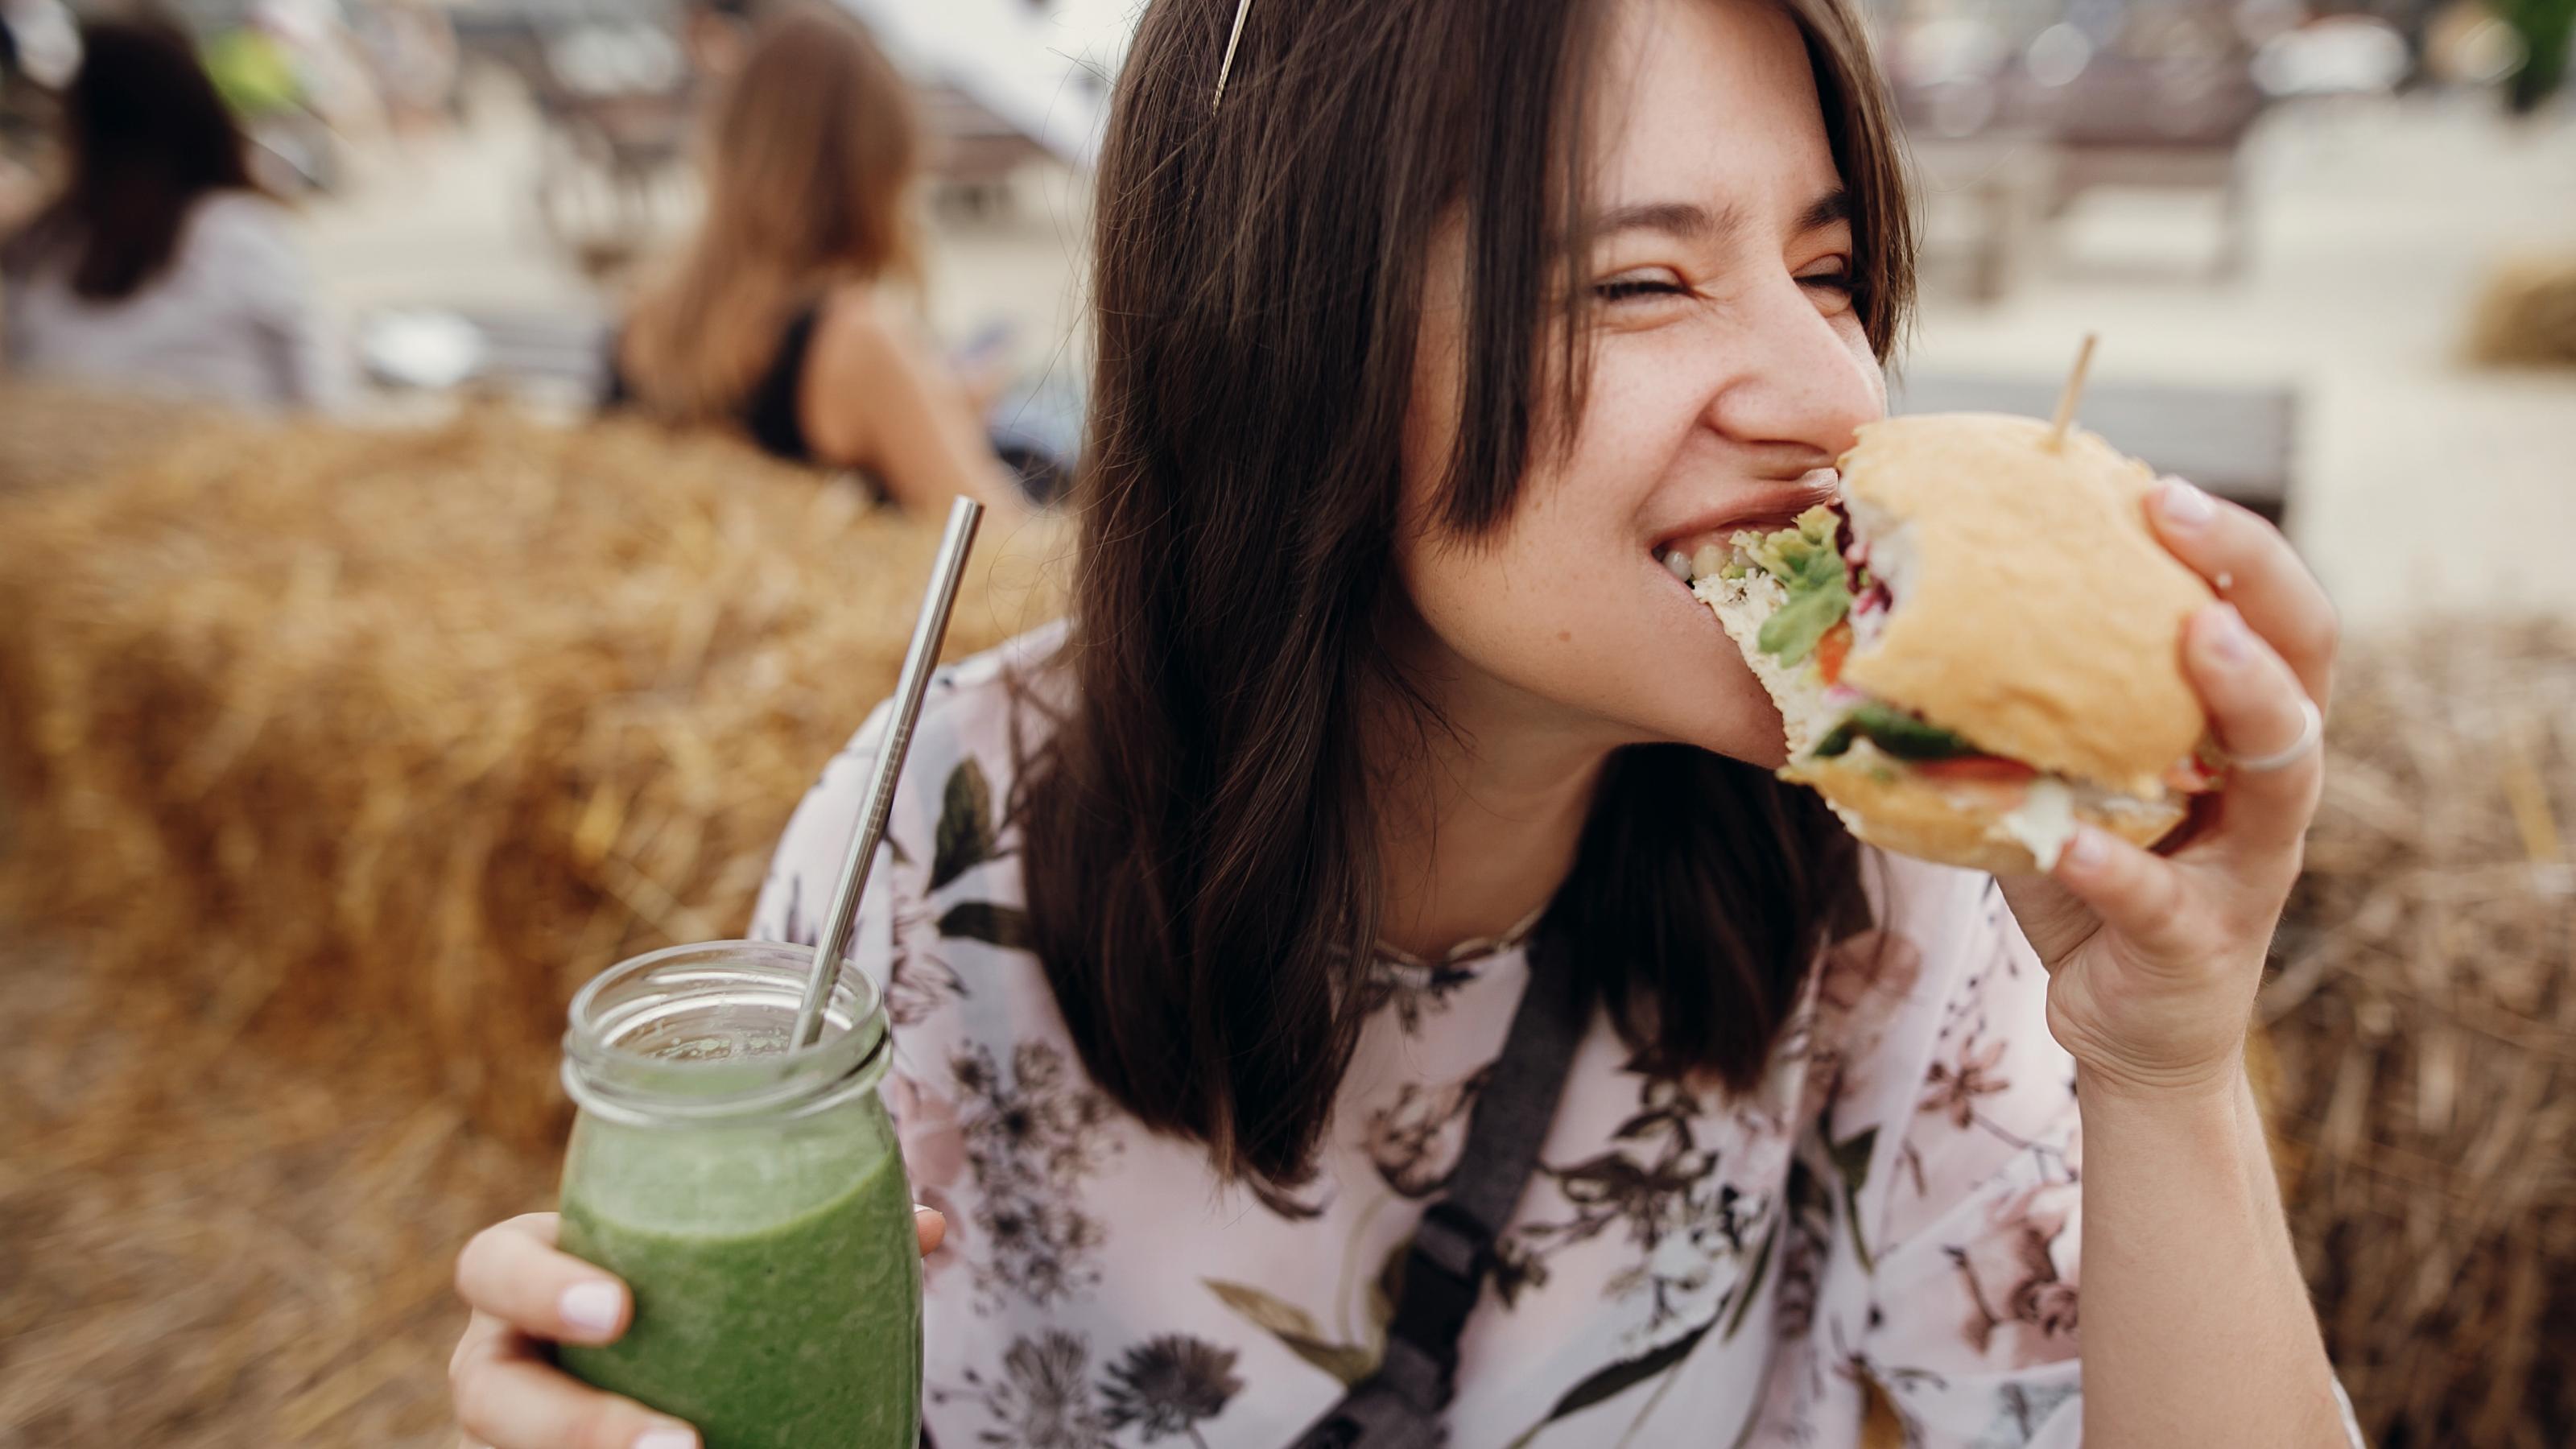 Eine junge Frau mit braunen Haaren hält in einer Hand ein Glas gefüllt mit einem grünen Smoothie, in der anderen hält sie einen vegetarischen Burger, in den sie herzhaft reinbeißt.